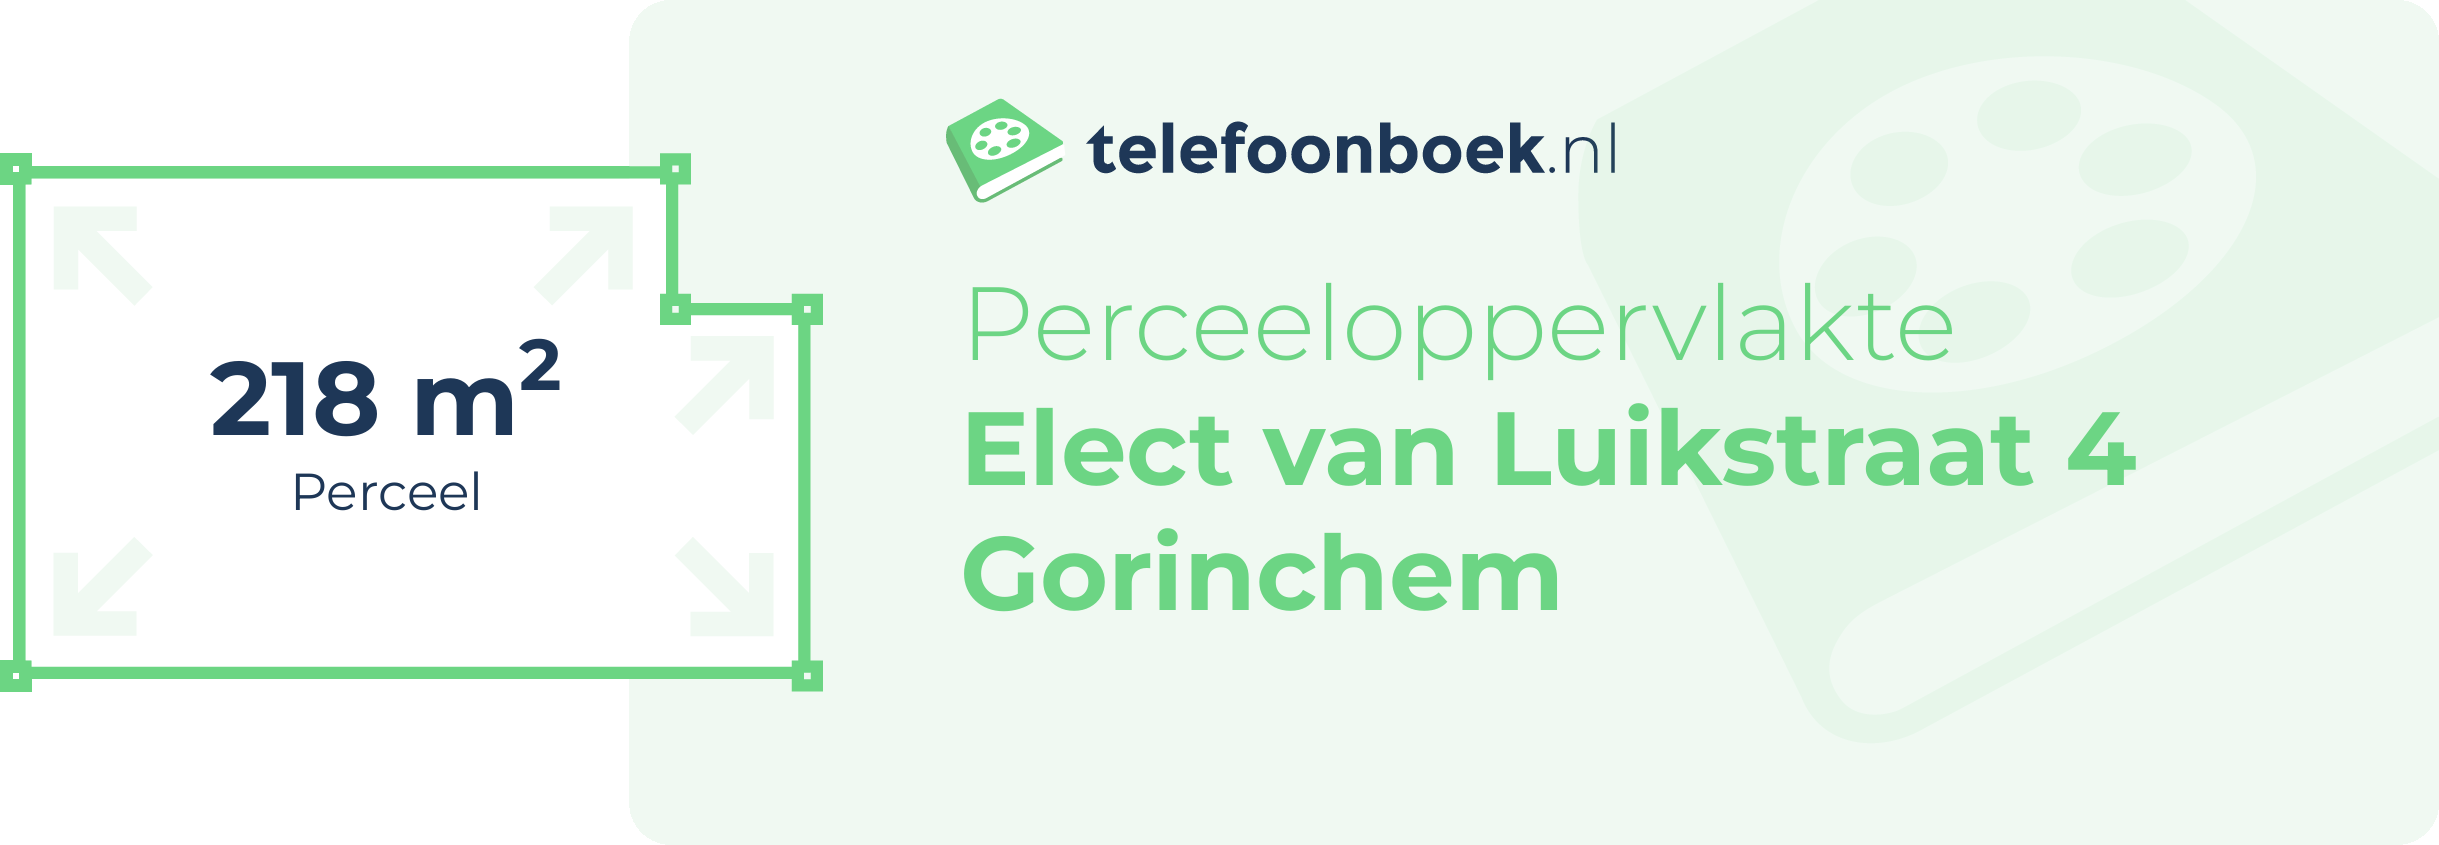 Perceeloppervlakte Elect Van Luikstraat 4 Gorinchem